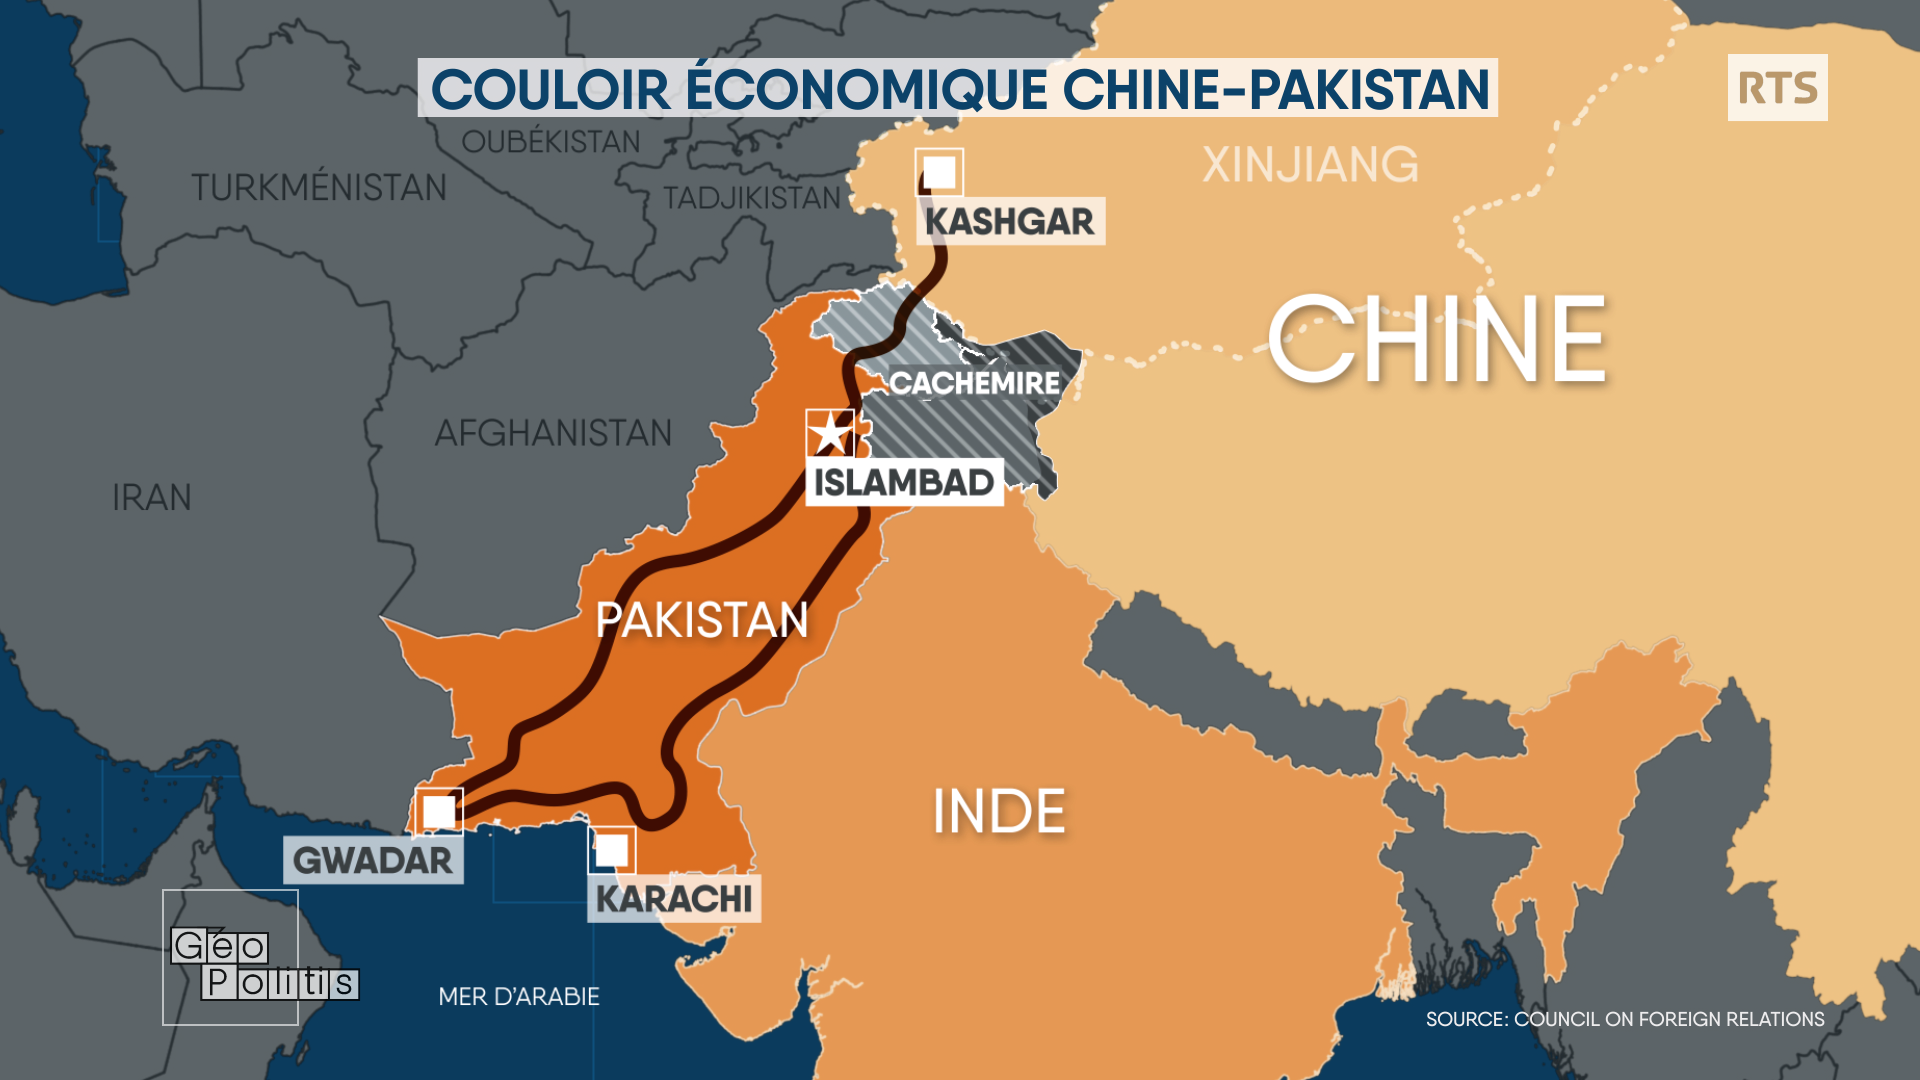 Le couloir économique prévu entre la Chine et le Pakistan. [RTS - Geopolitis]